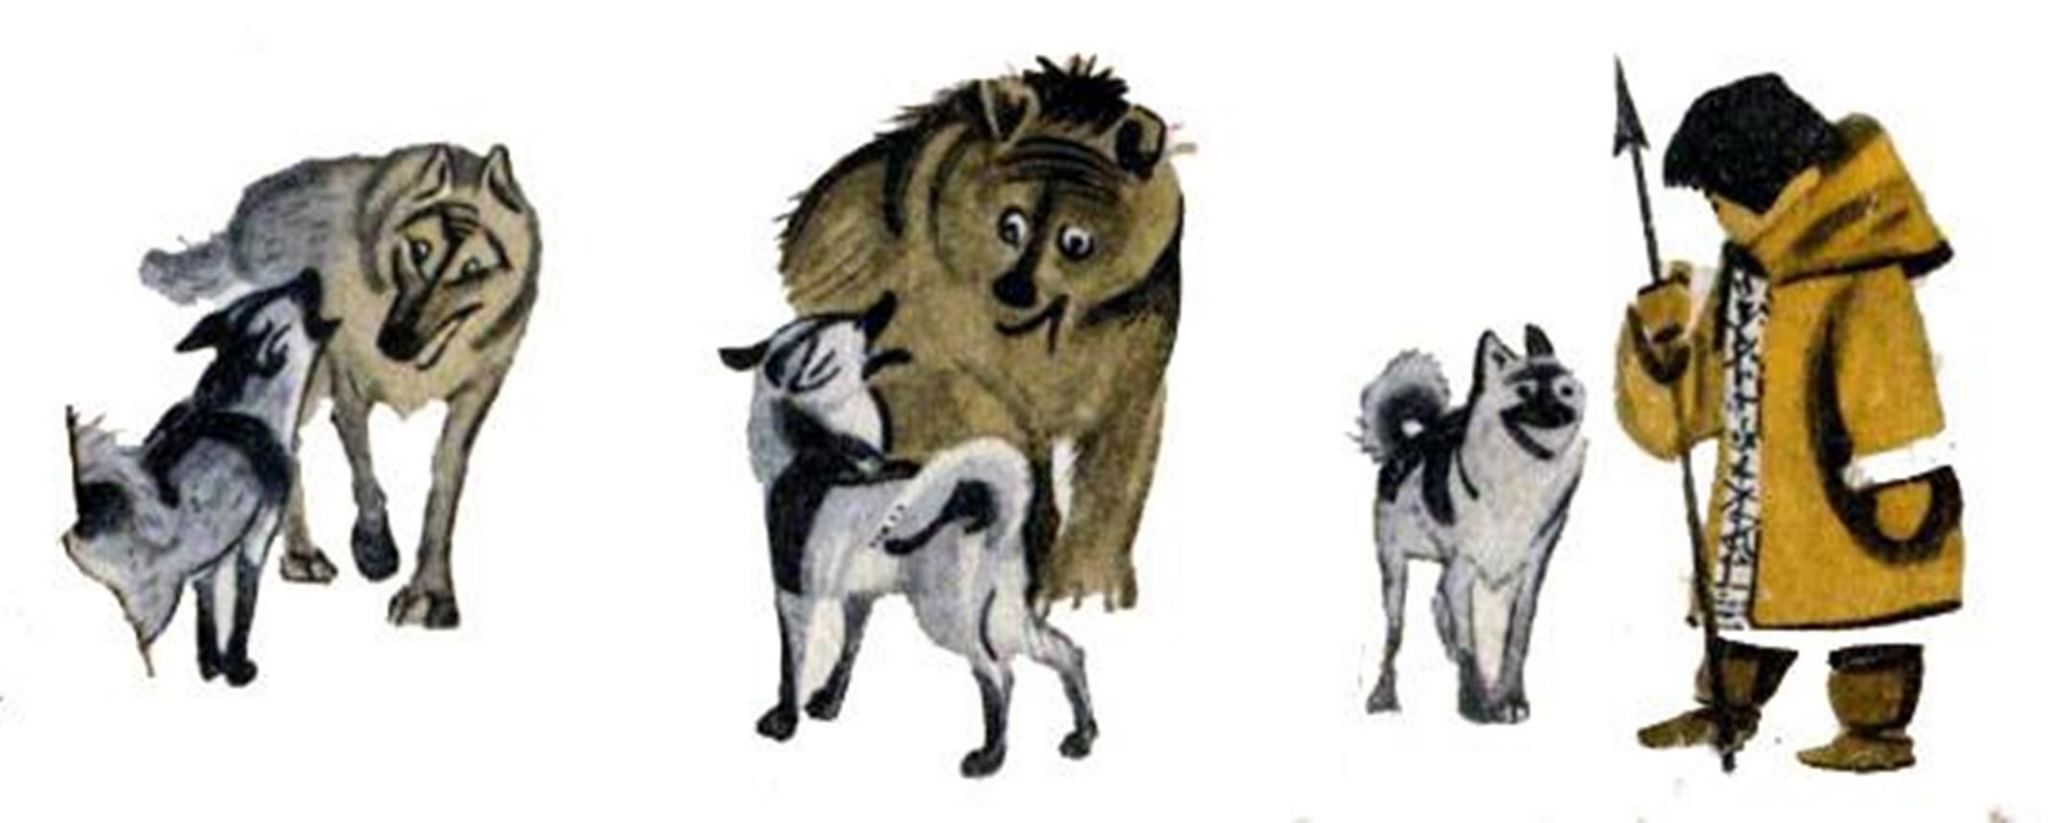 Мордовская сказка как собака друга искала слушать. Человек и собака Ненецкая сказка. Как собака нашла себе хозяина друга бурятская сказка. Народная Ненецкая сказка человек и собака. Ненецкая сказкачедовек и собака.